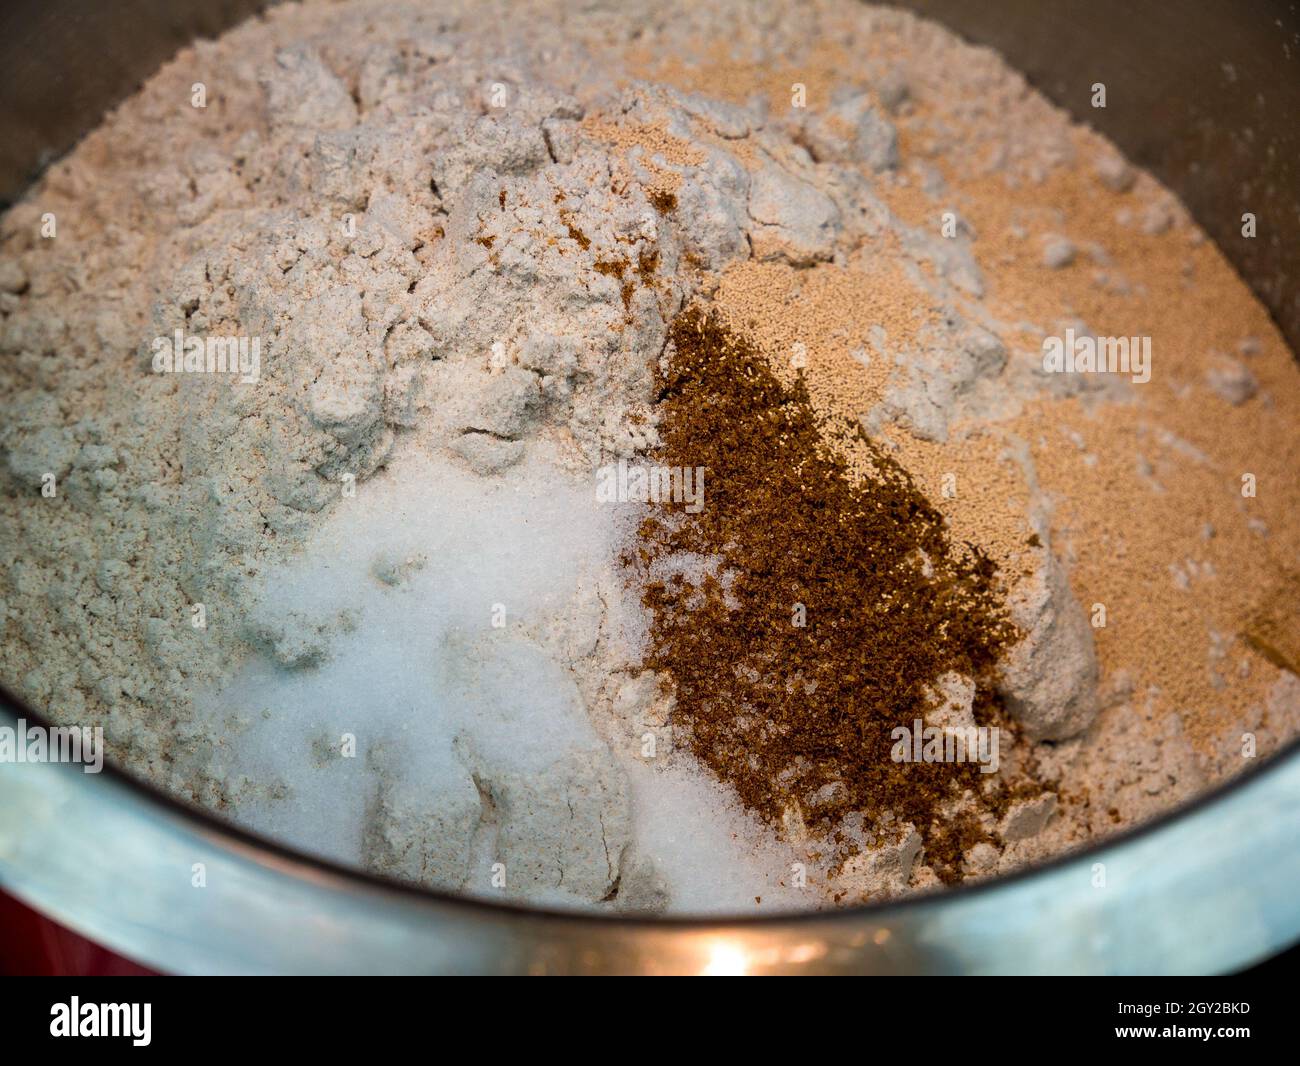 Farina di segale, sale, cumino macinato e lievito secco in un recipiente in acciaio inox - base per l'impasto del pane - fuoco selettivo Foto Stock